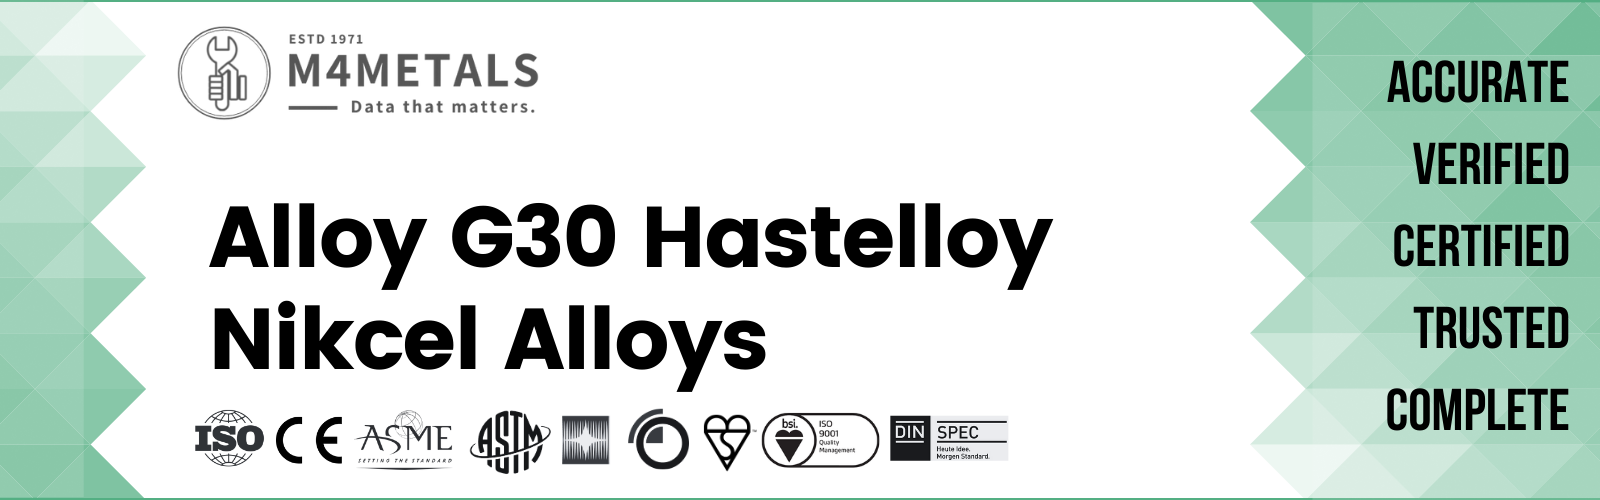 Hastelloy Alloy G30